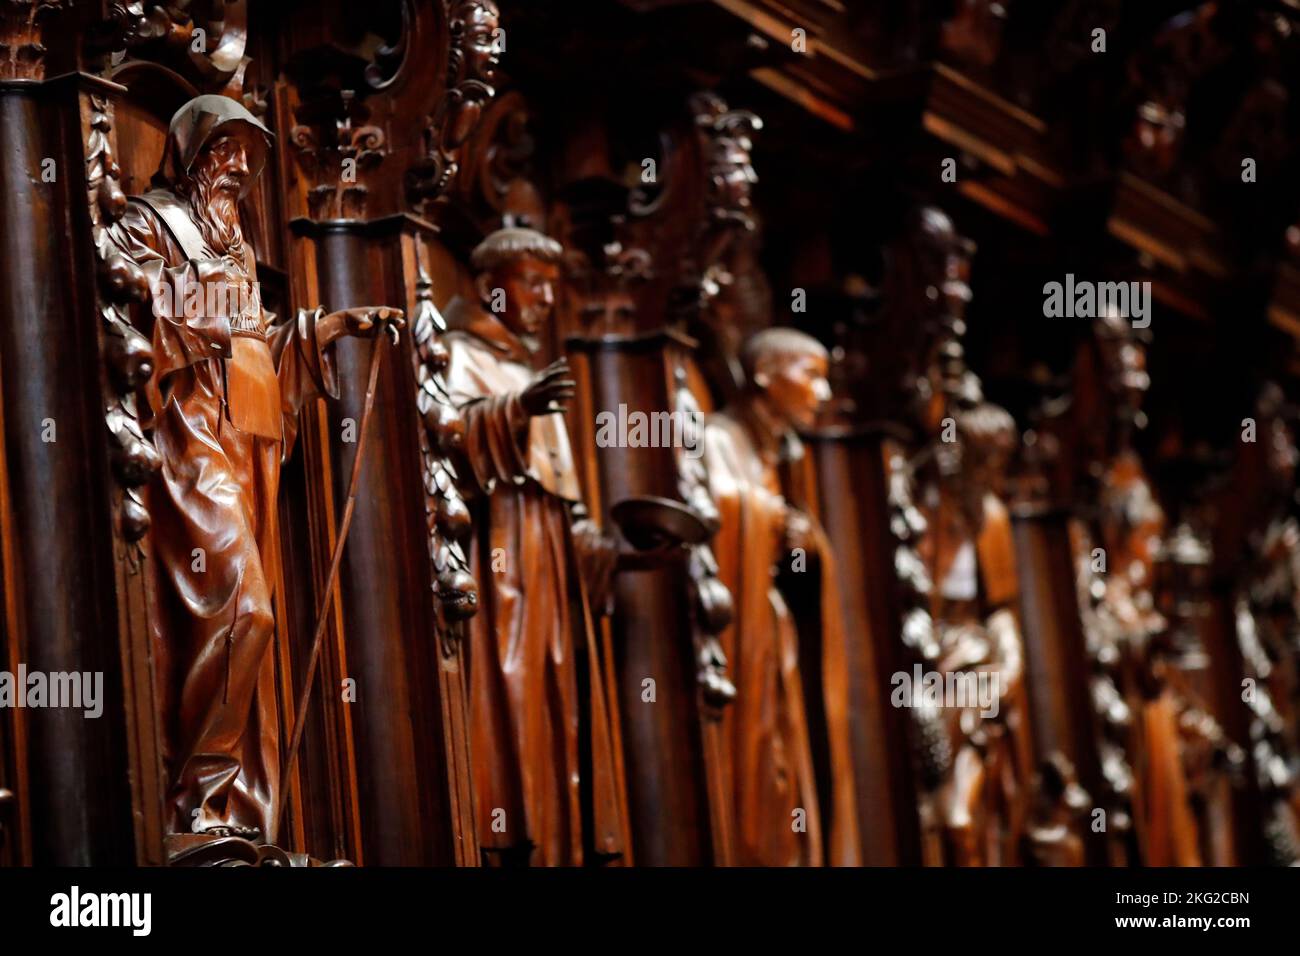 Cattedrale di Malaga. Interno della cattedrale. Le bancarelle con i santi cristiani. Spagna. Foto Stock